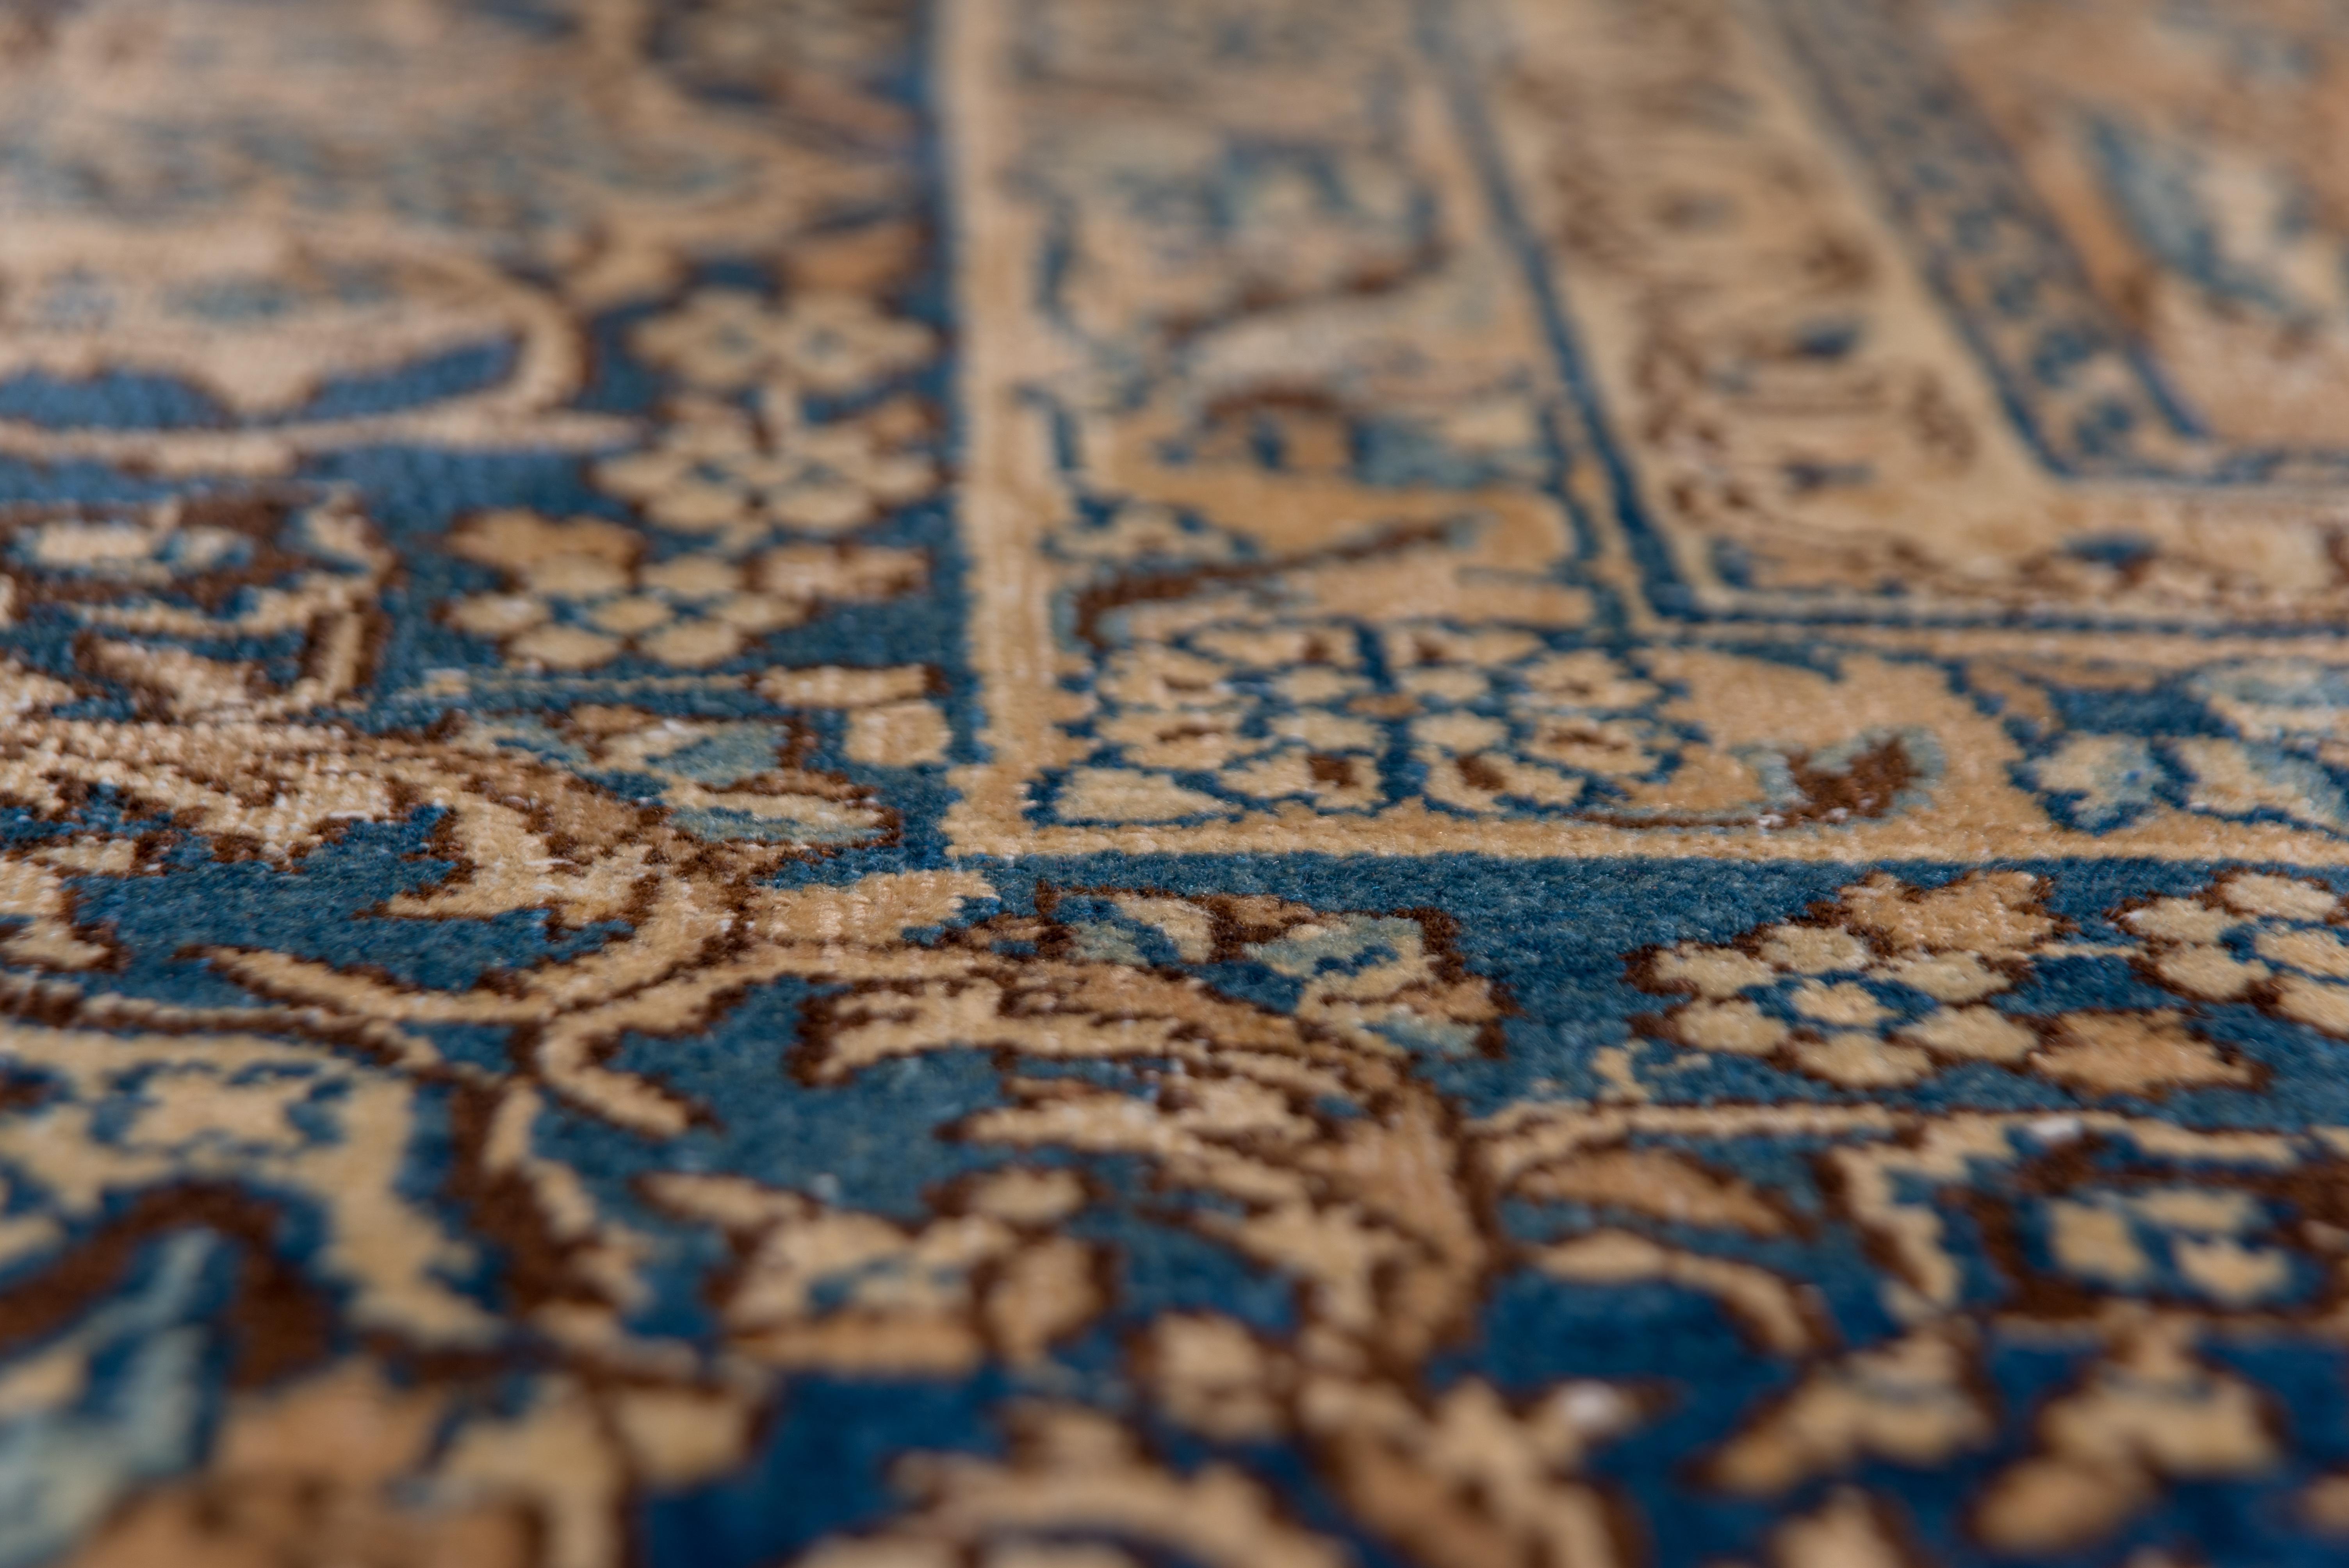 Toutes les teintures naturelles sur ce médaillon classique Kerman du SE de la Perse. Le champ bleu profond présente un médaillon lobé à clapet d'or et de crème avec des arabesques internes fendues plus bleu clair et de larges pendants d'écusson. Des